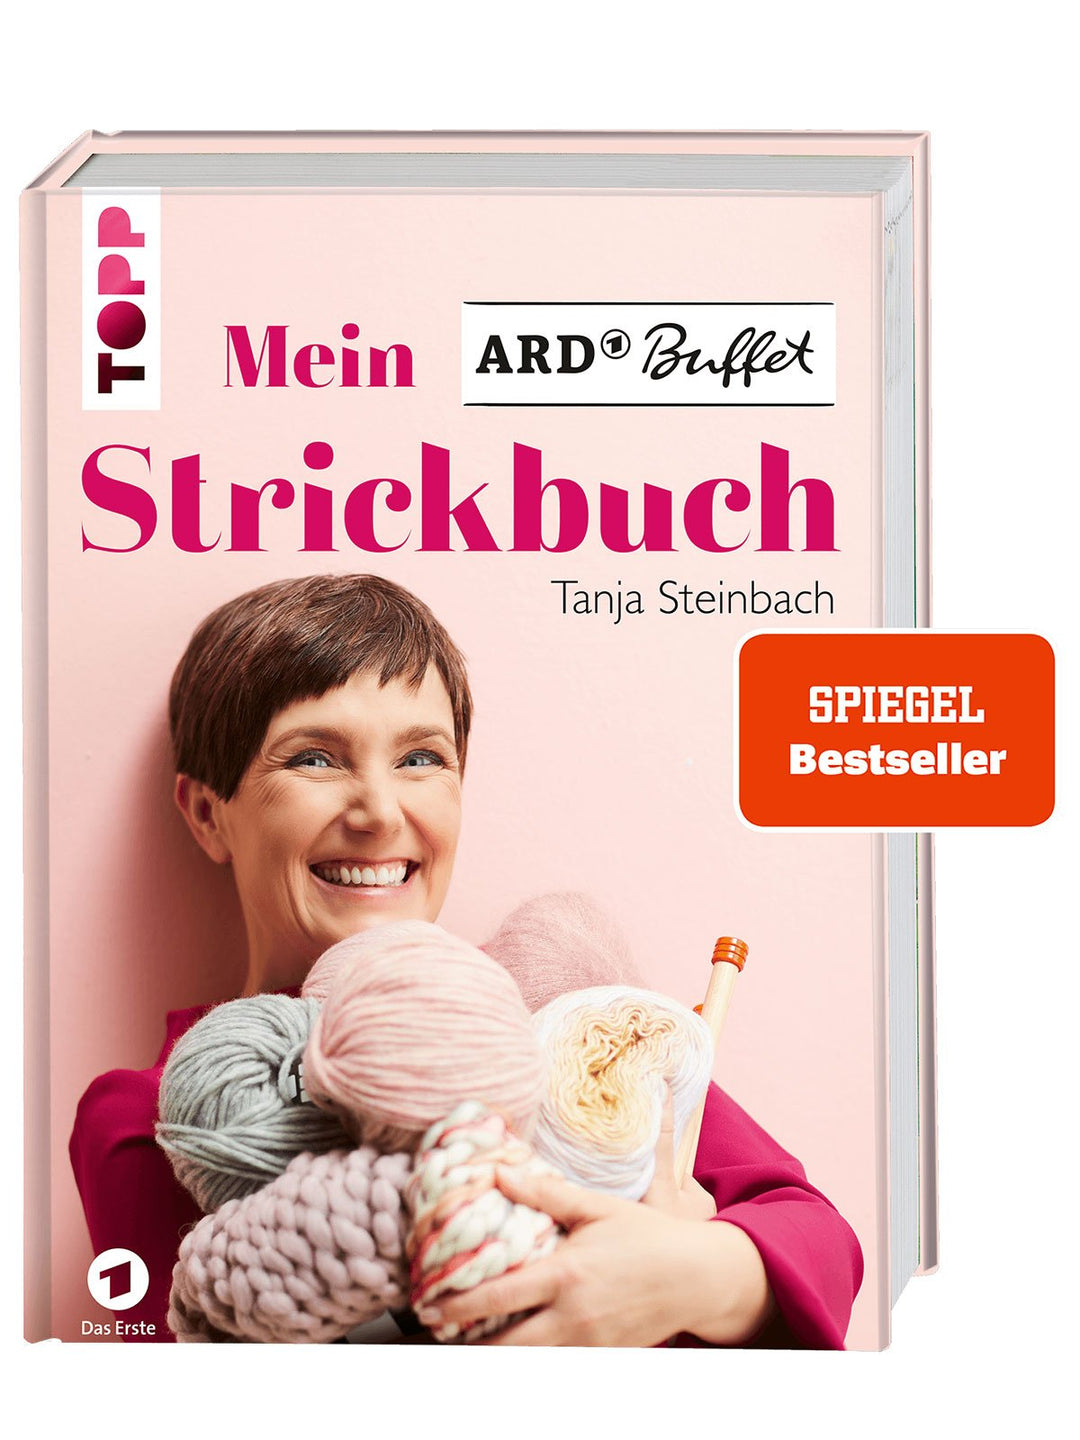 Mein Strickbuch - Tanja Steinbach